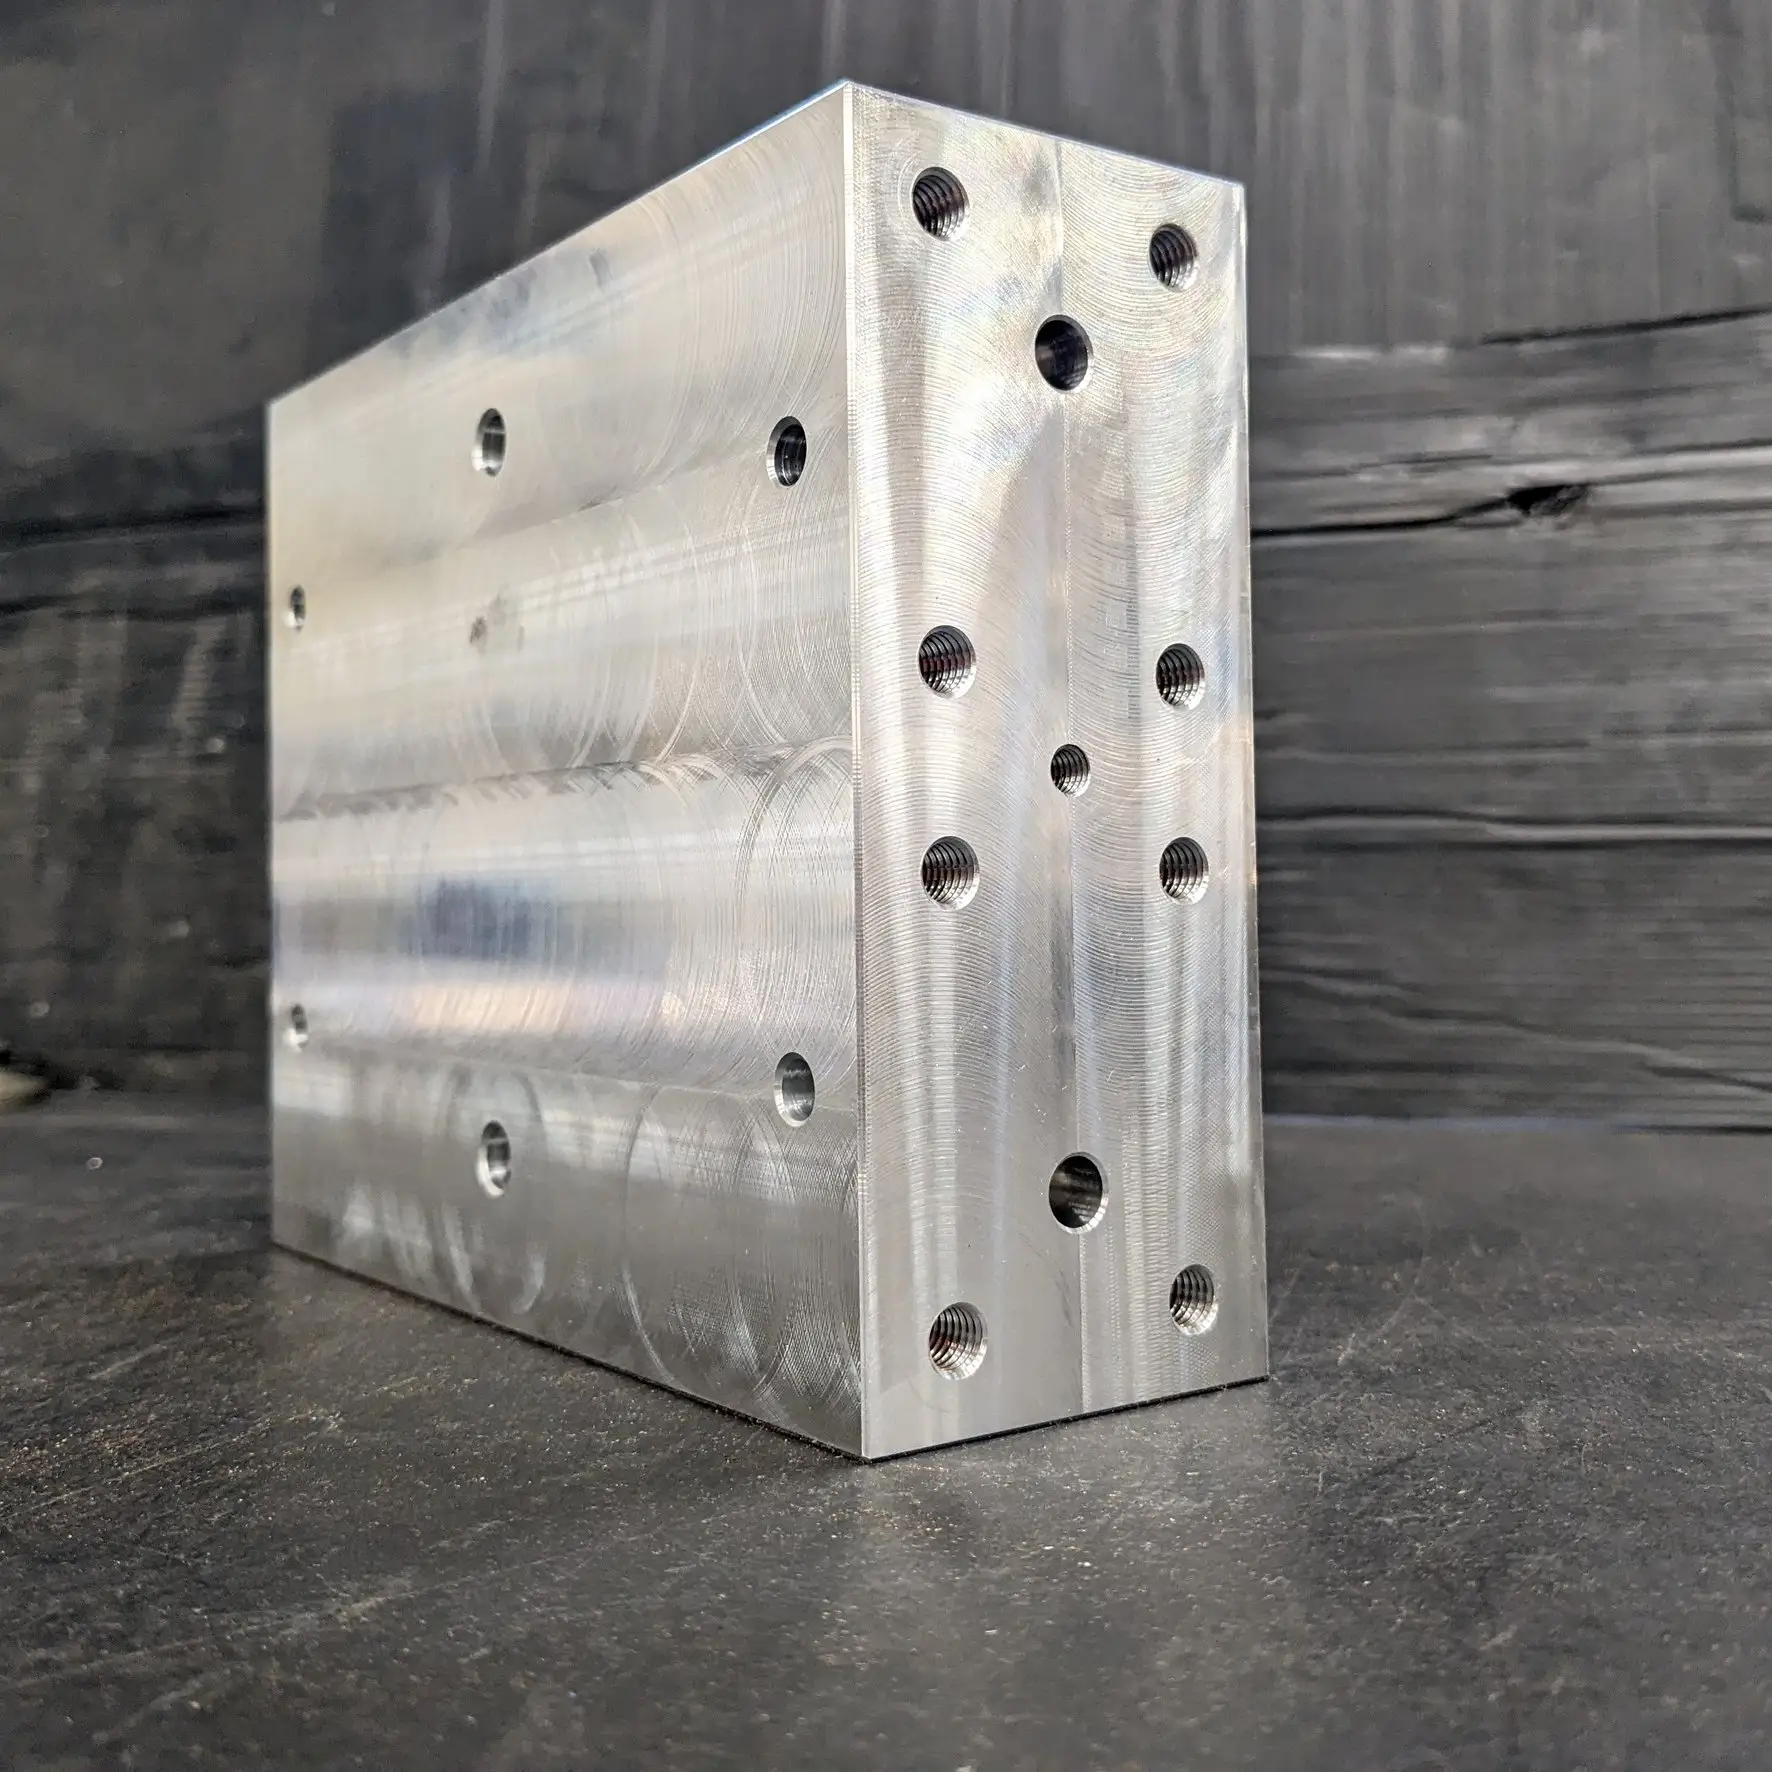 Yüksek hassasiyetli CNC torna, freze ile işlenmiş alüminyum blok, İtalya'da yapılan ve müşteri için özelleştirilmiş